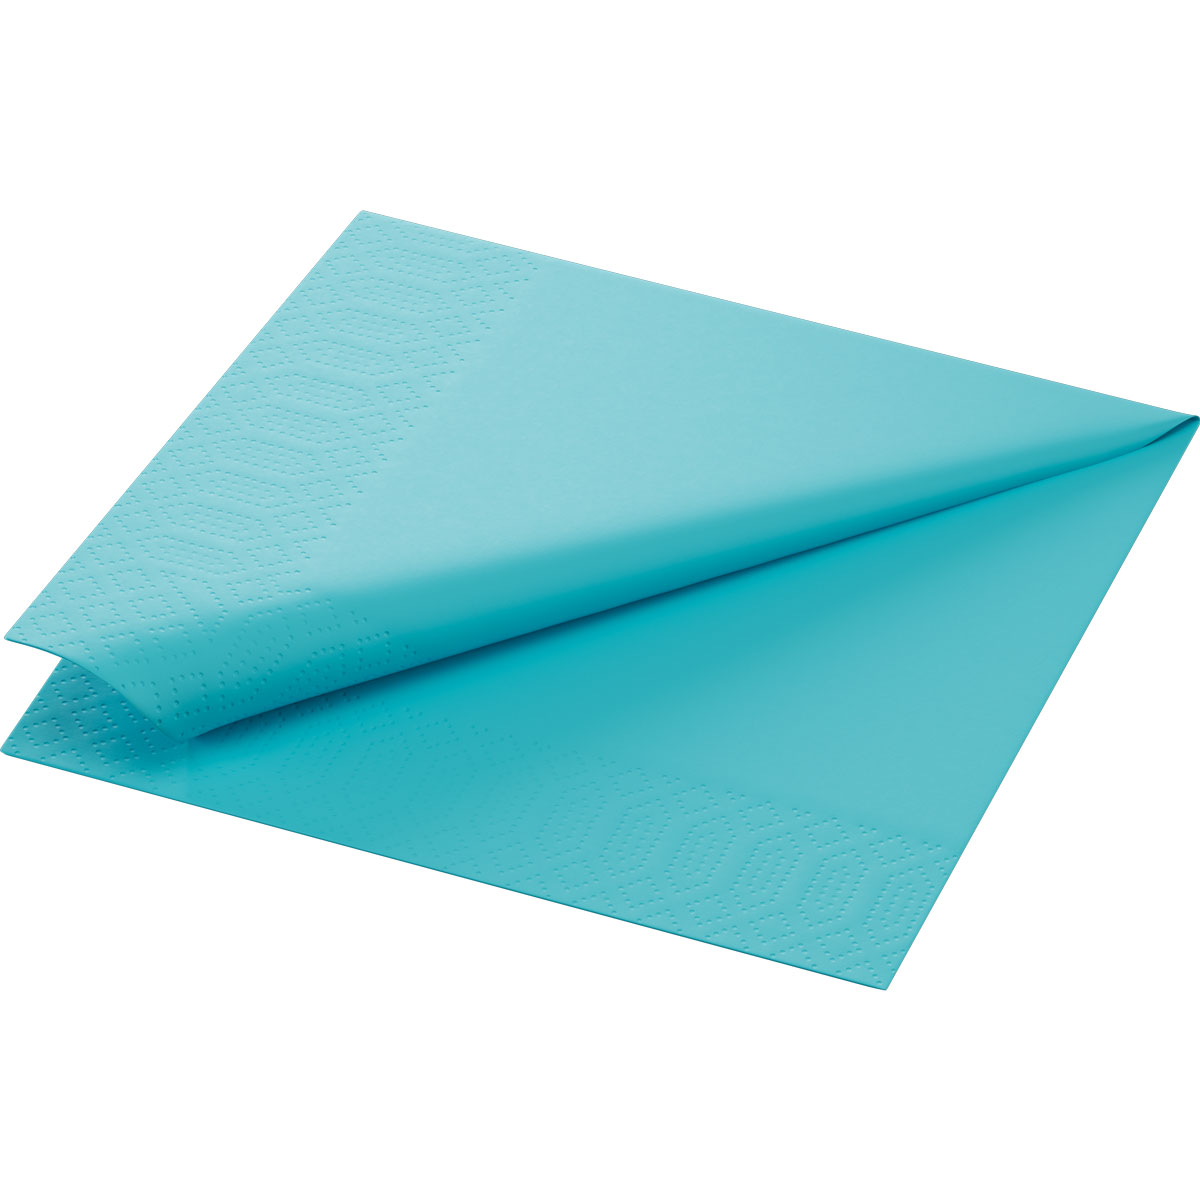 Duni Zelltuch Serviette, 33x33 cm, 3-lg., mint blue, 1/4 Falz, 4 x 250 Stück/Karton